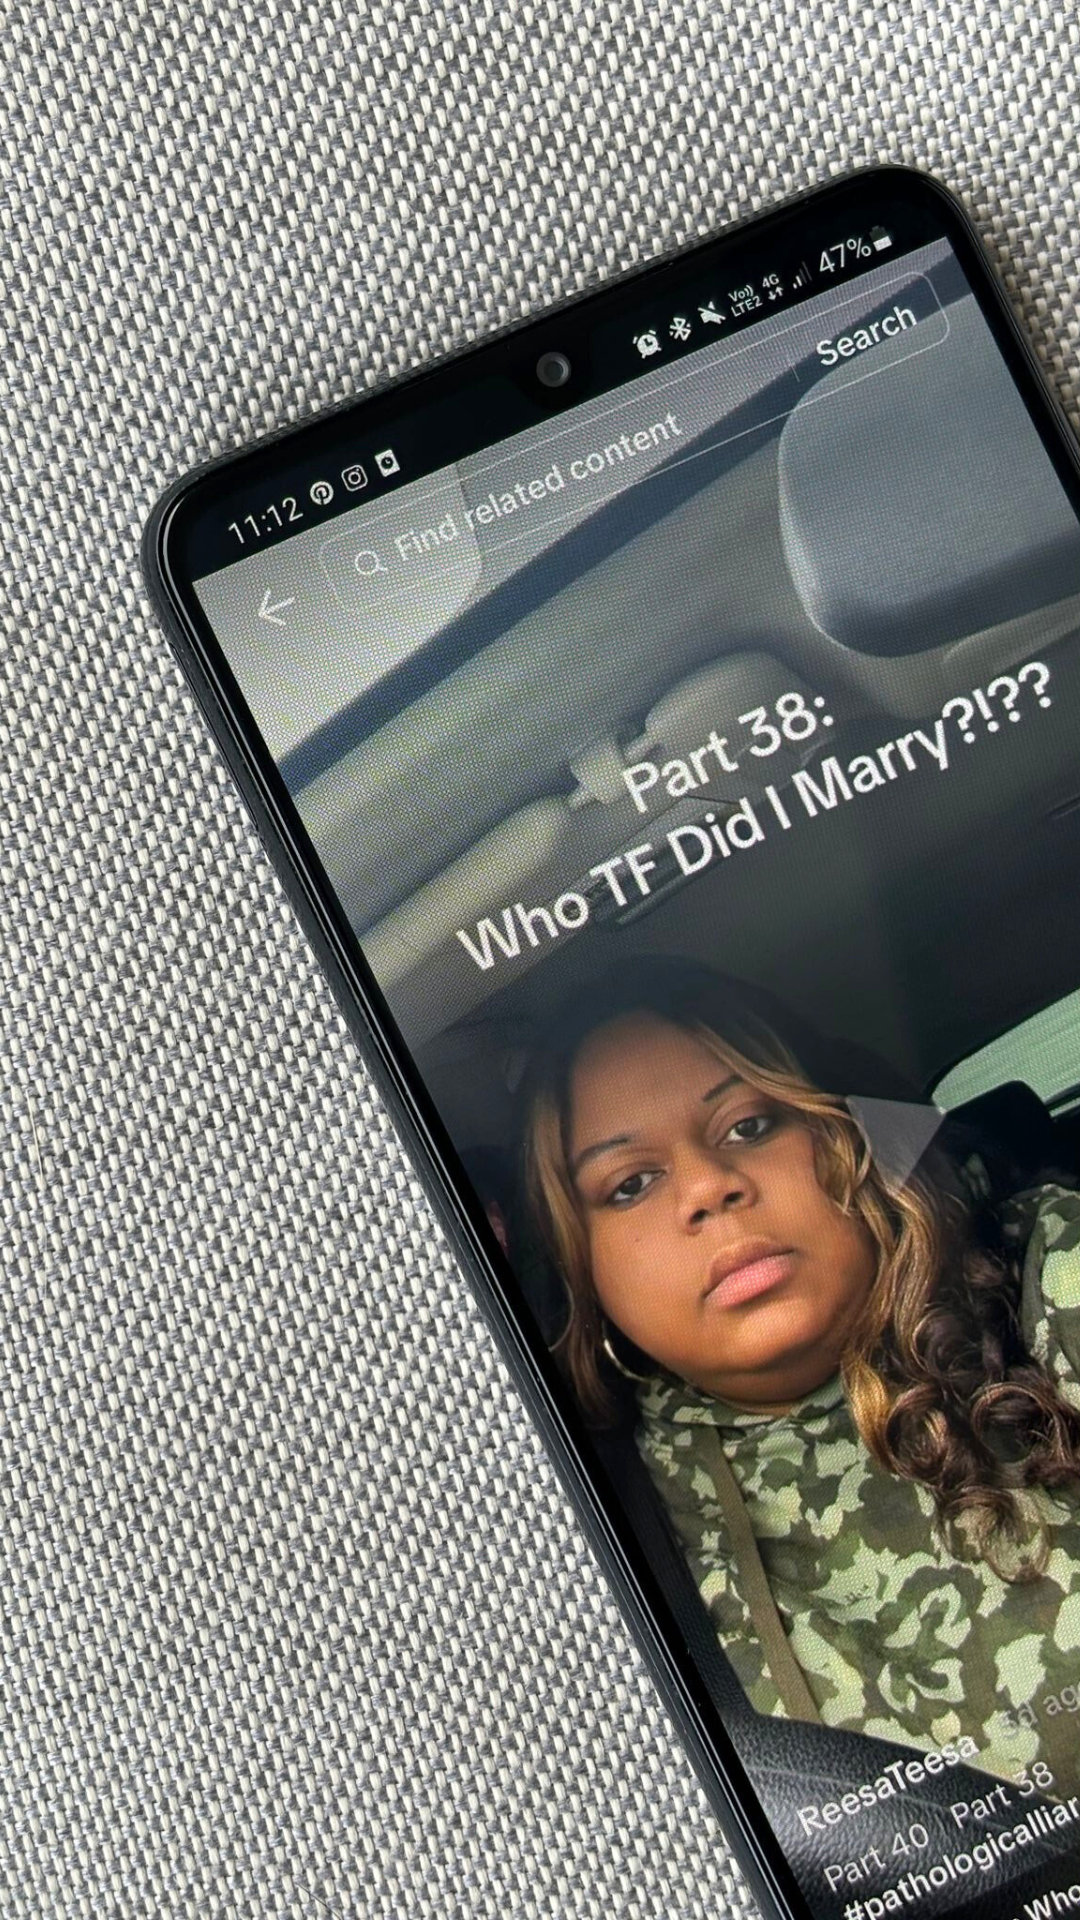 Drama u 50 činova: Što stoji iza viralnog ‘Who TF did I marry’ trenda na TikToku?